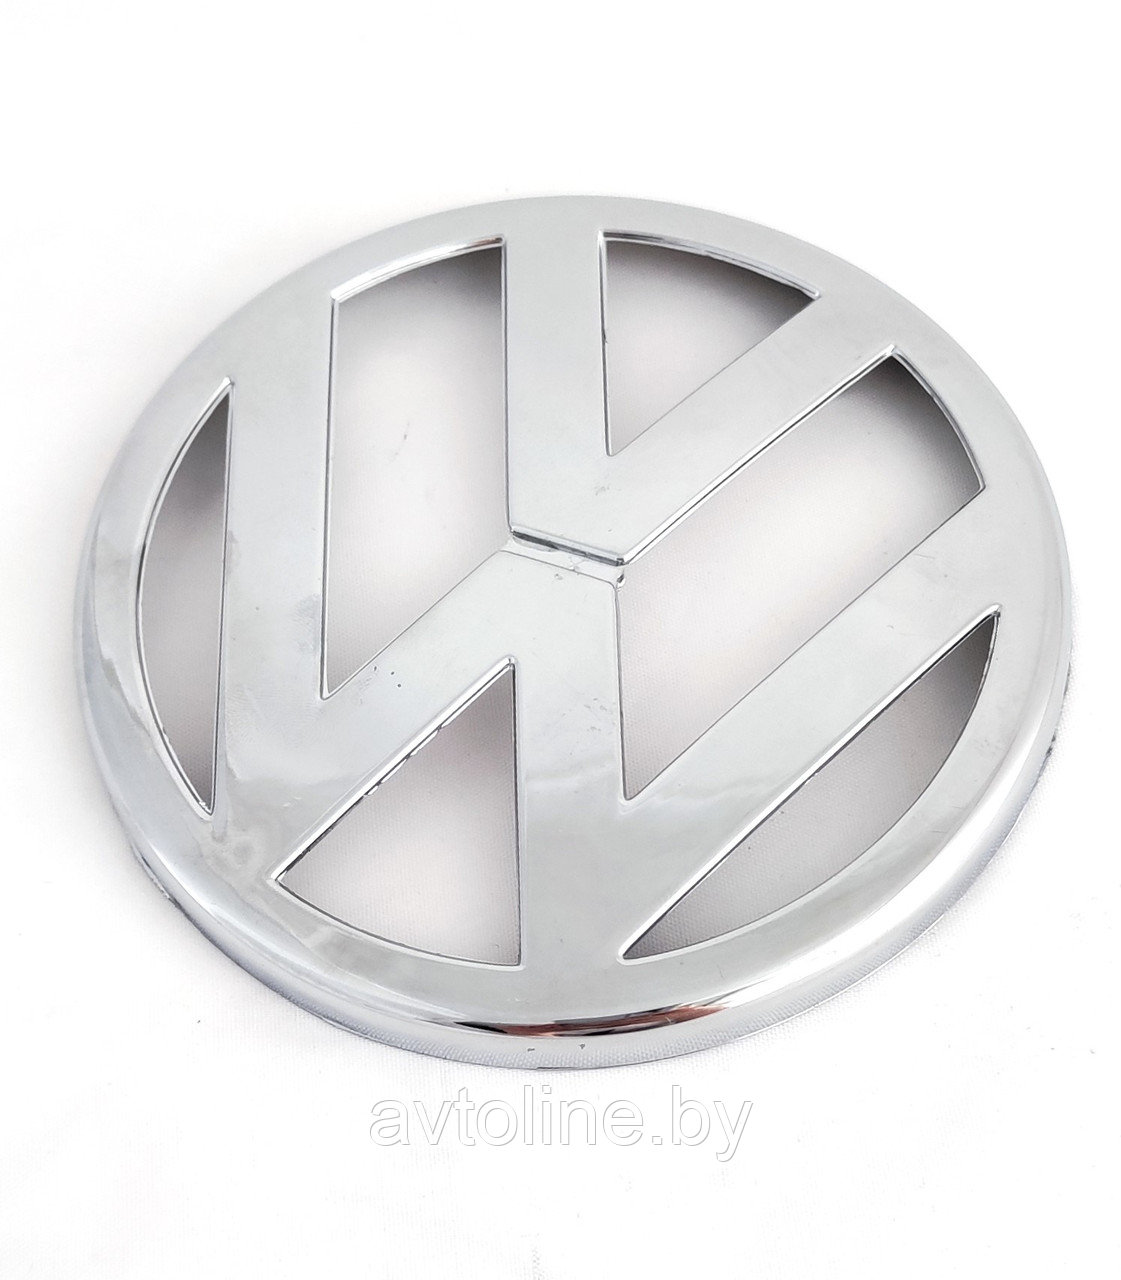 Эмблема решетки радиатора Volkswagen Golf IV 1J0853601 (под оригинал)